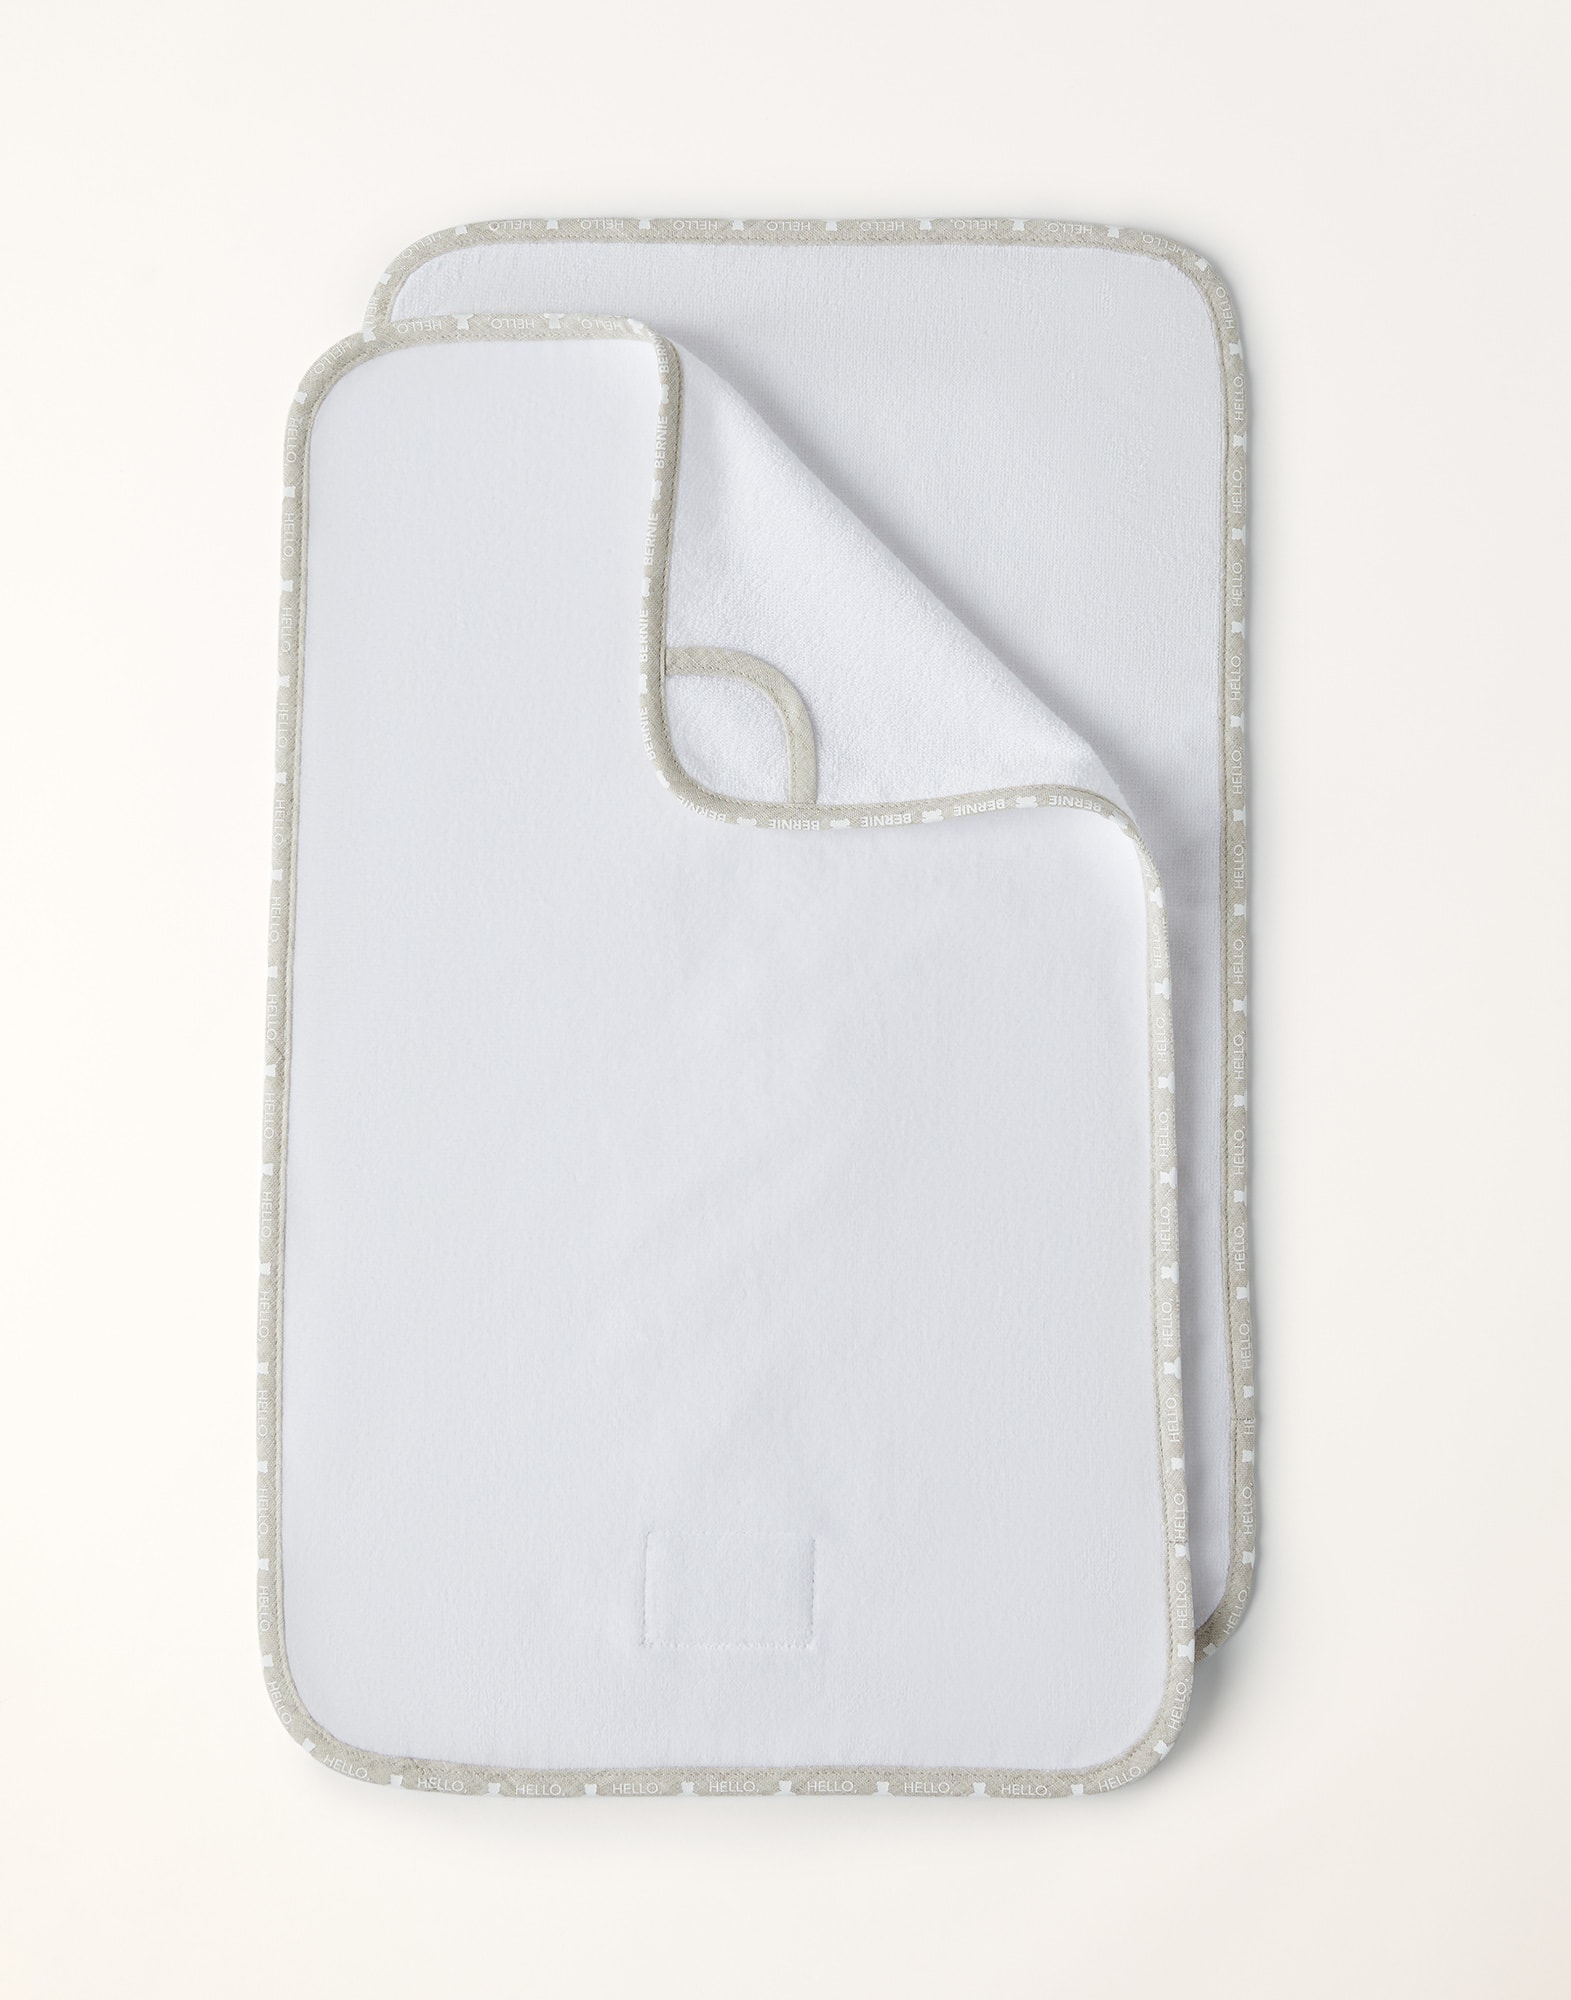 2-piece towel set White Baby - Brunello Cucinelli